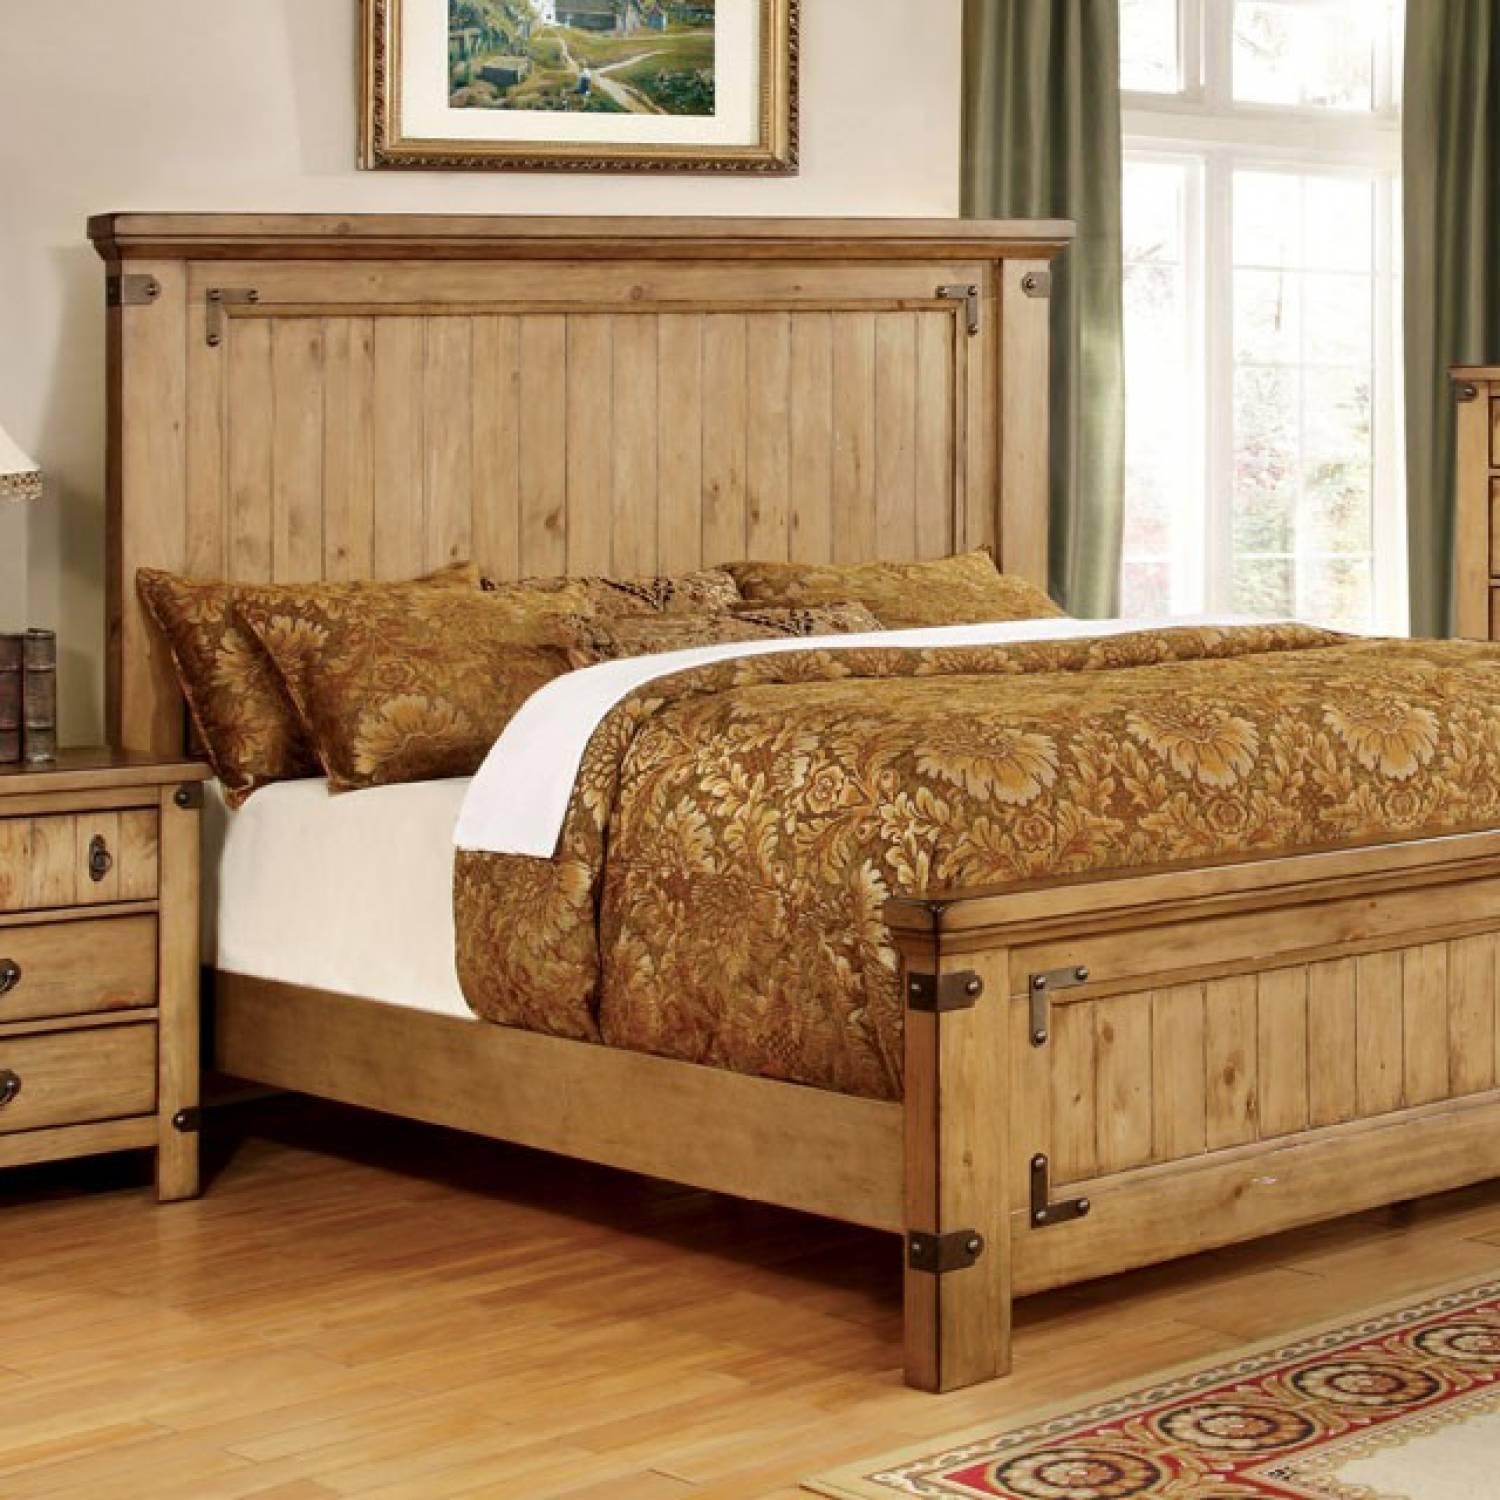 деревянная кровать во сне